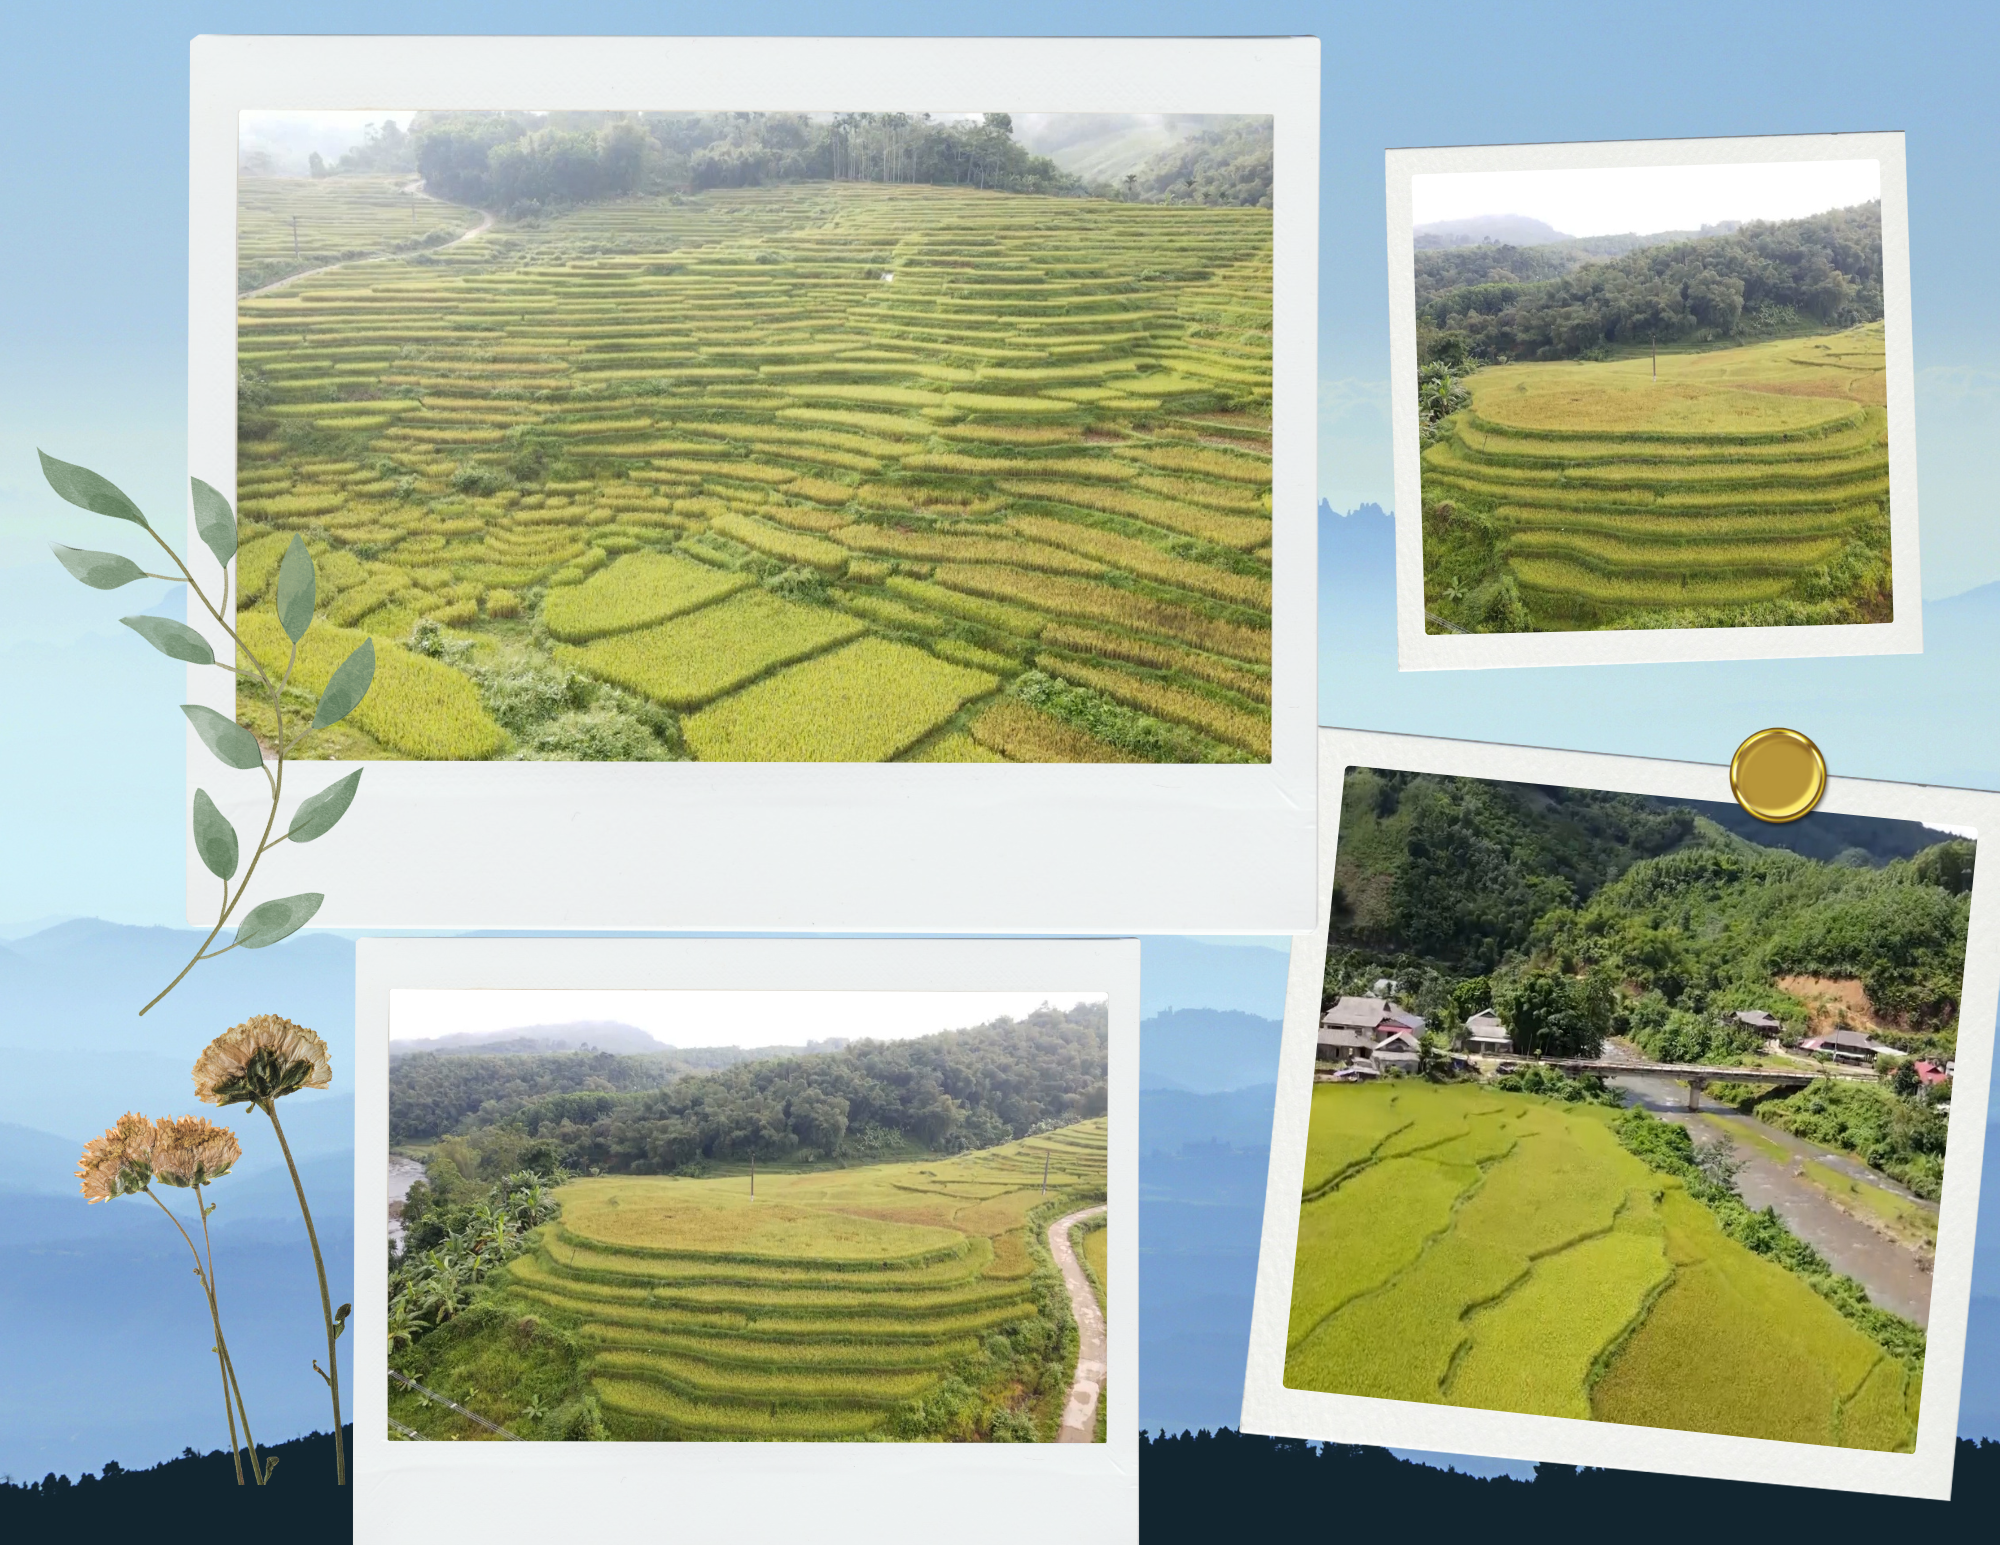 Vùng đất Yên Thắng - Điểm đến lý thú ở huyện miền núi Lang Chánh - Ảnh 3.